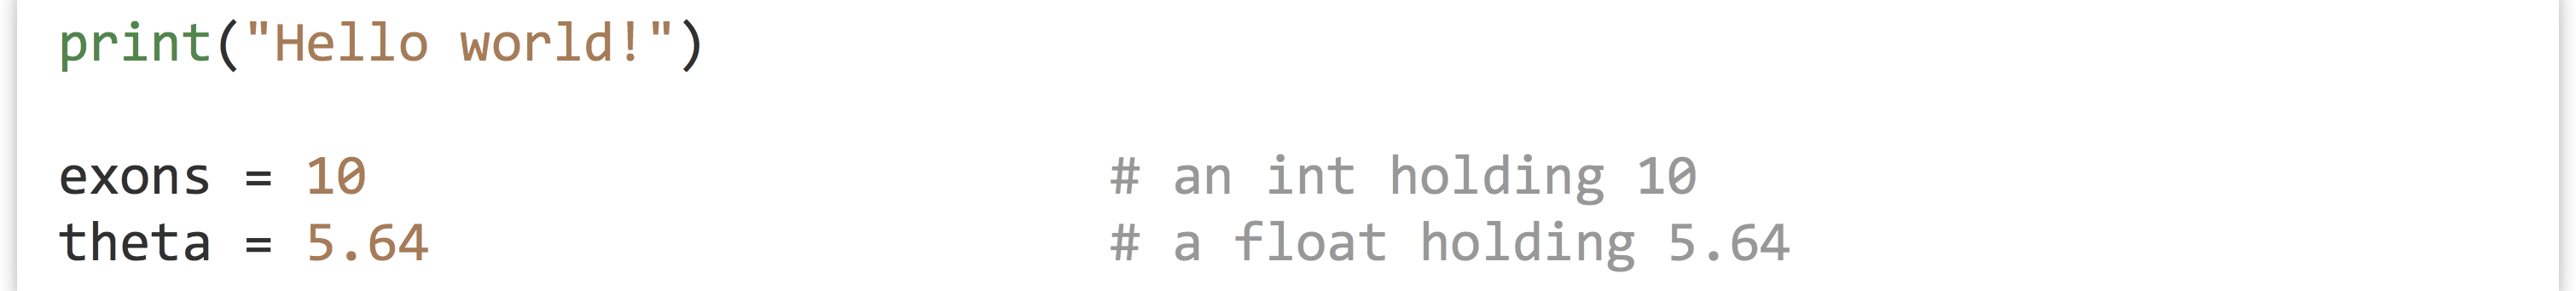 II.2_1_py_5_int_float